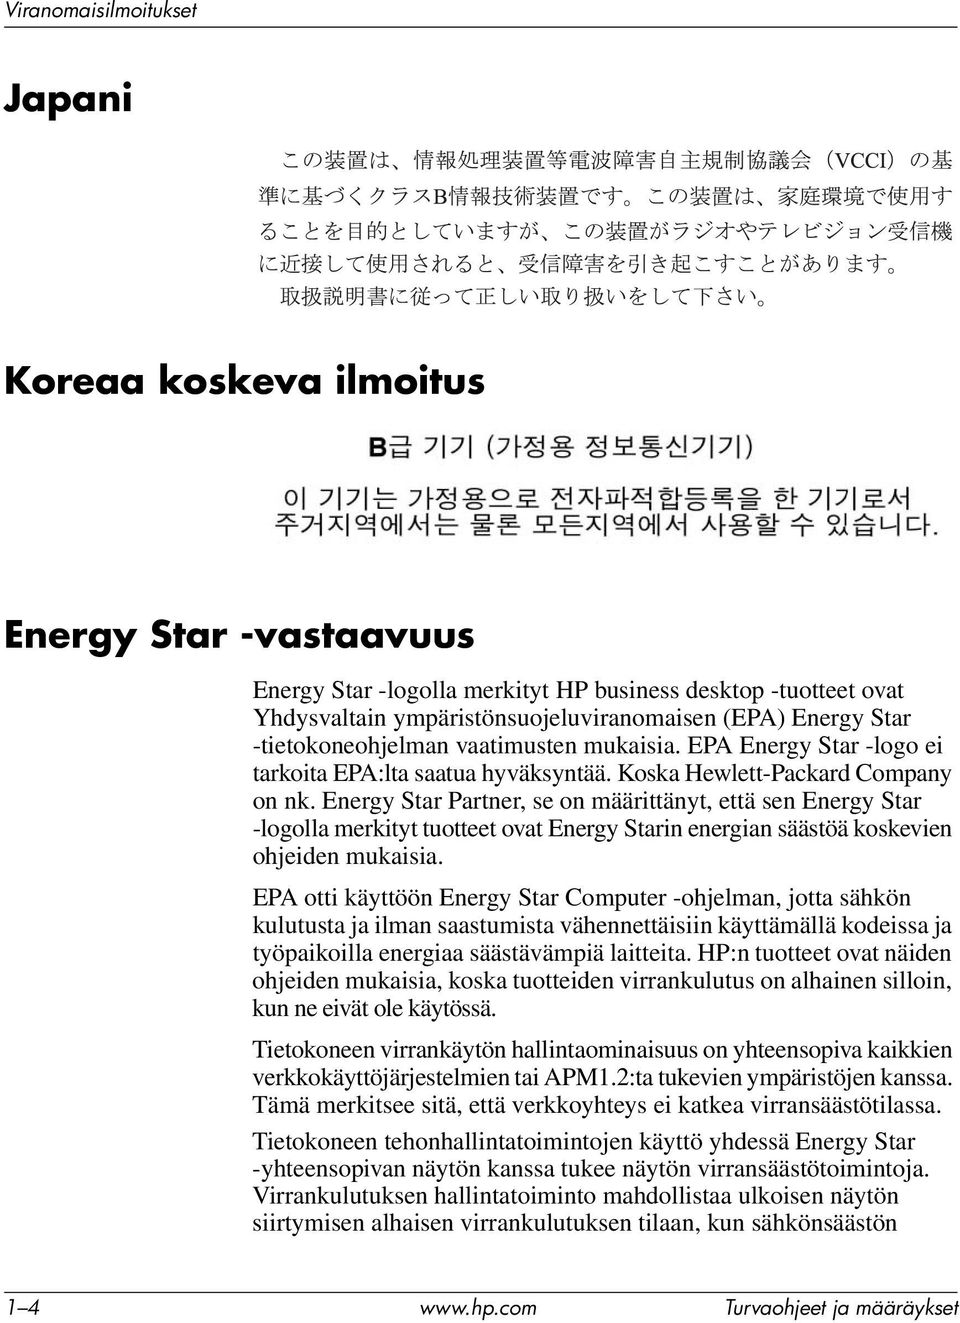 Energy Star Partner, se on määrittänyt, että sen Energy Star -logolla merkityt tuotteet ovat Energy Starin energian säästöä koskevien ohjeiden mukaisia.